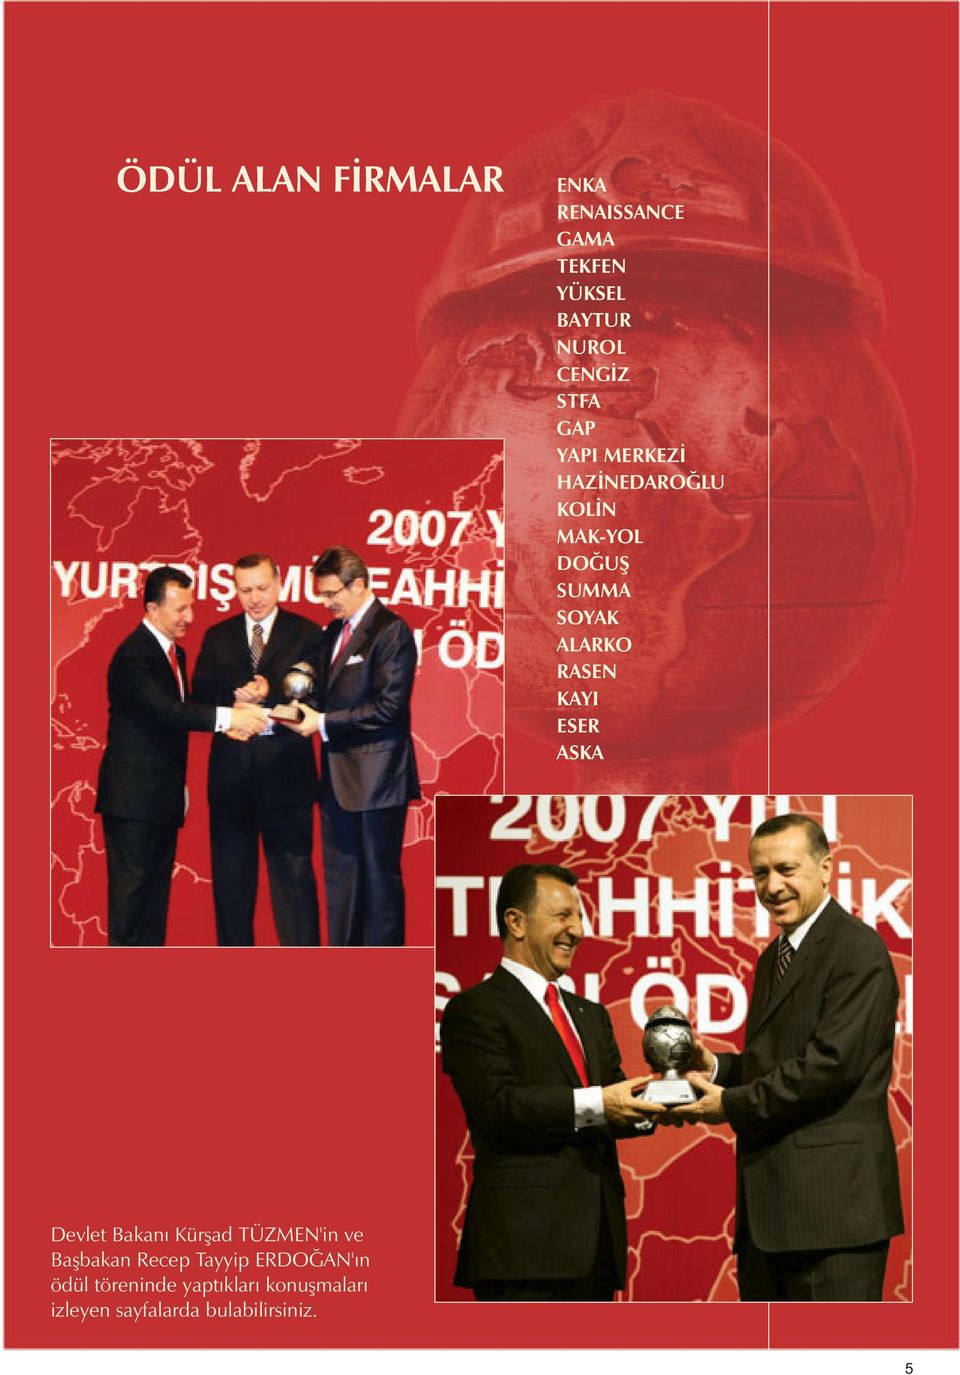 RASEN KAYI ESER ASKA Devlet Bakanı Kürşad TÜZMEN'in ve Başbakan Recep Tayyip